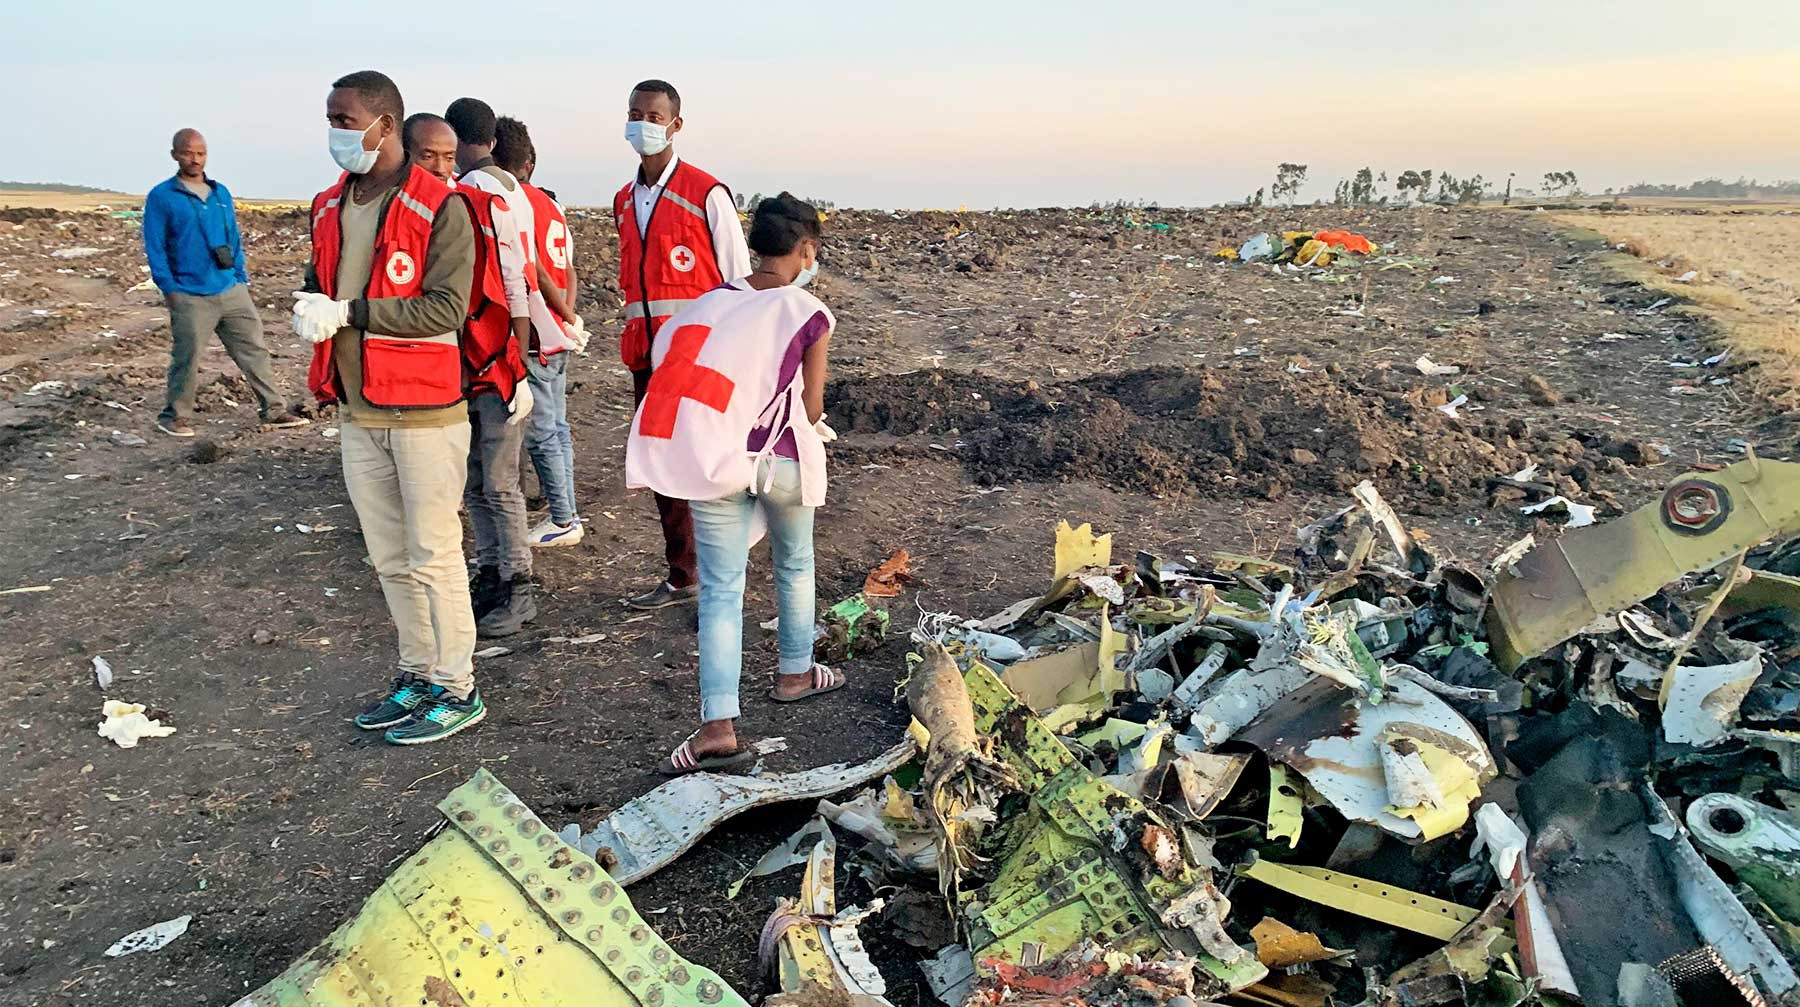 Dailystorm - Boeing отменила презентацию нового самолета из-за авиакатастрофы в Эфиопии